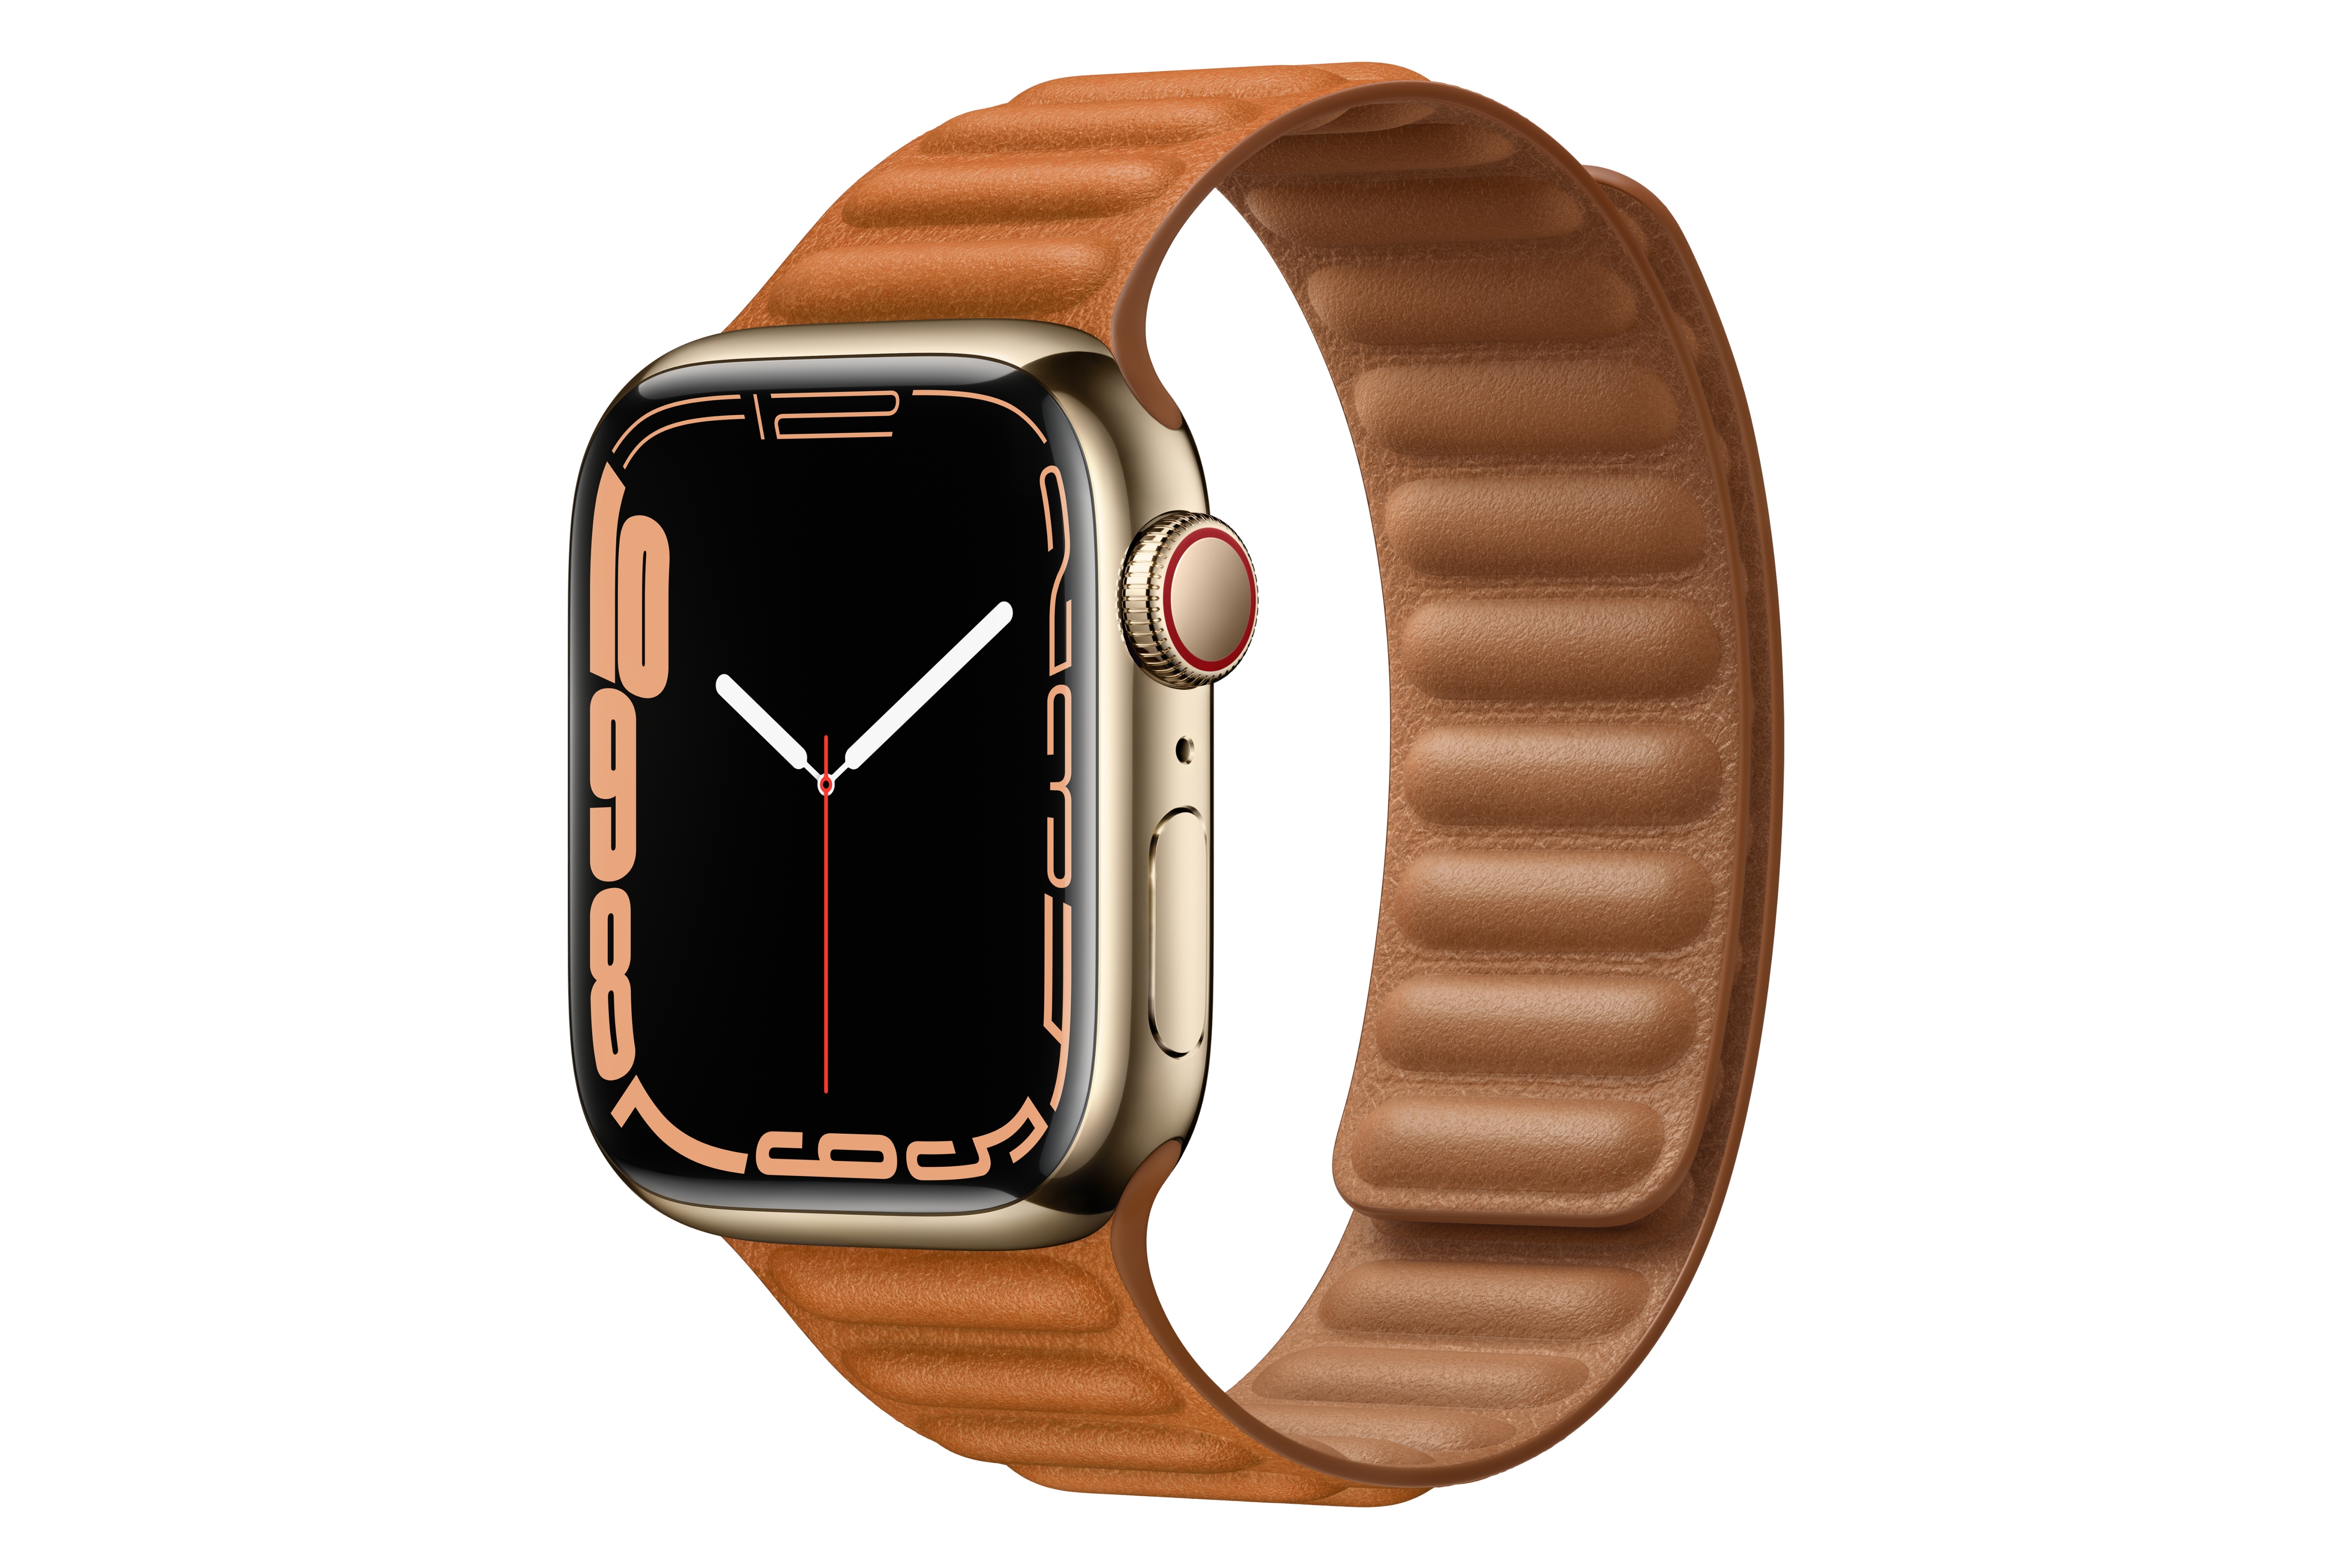 اپل واچ سری 7 استیل / Apple Watch Series 7 Stainless Steel طلایی